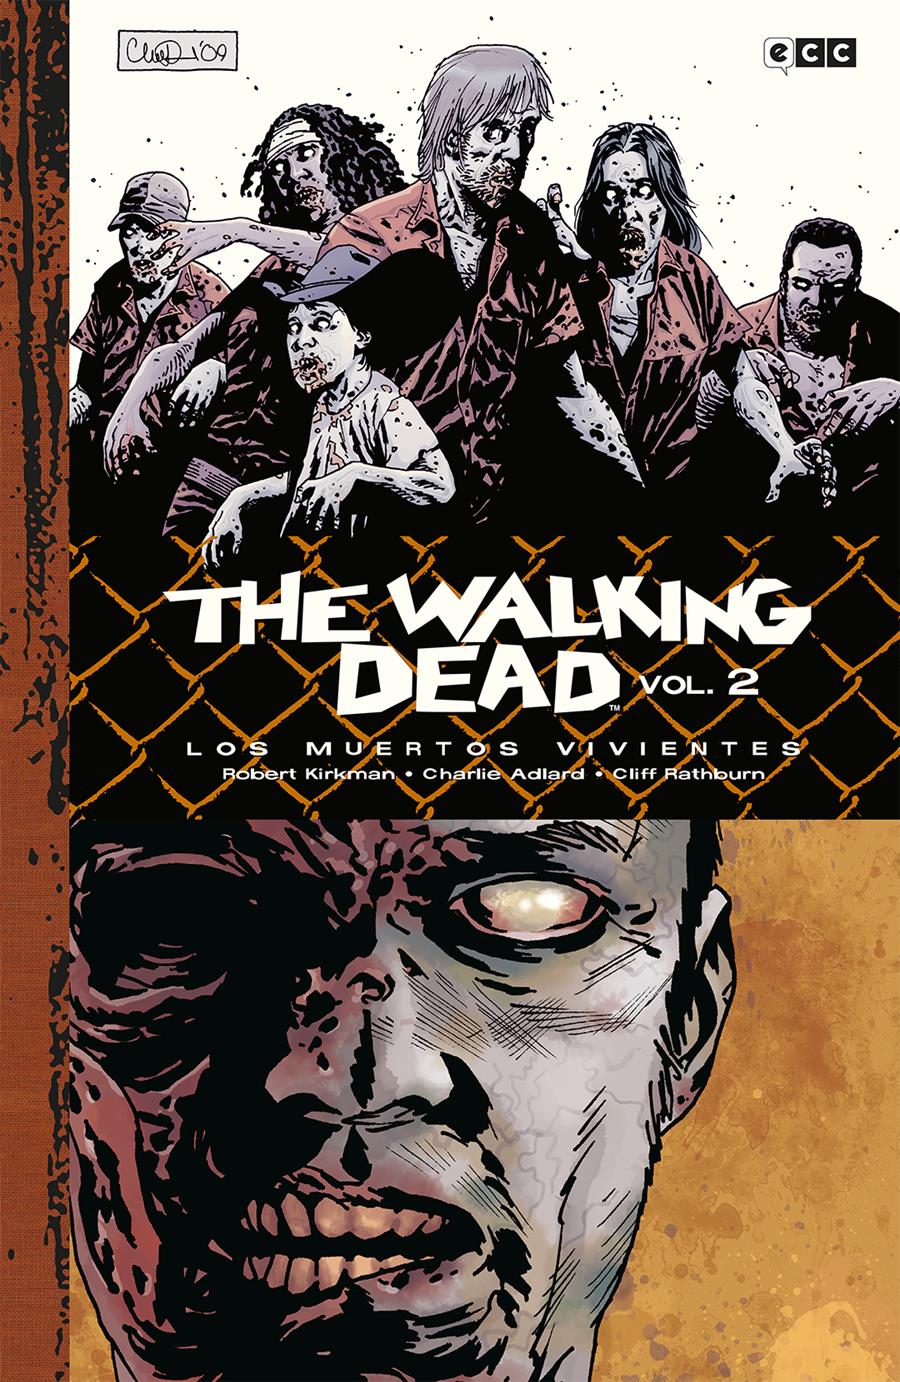 The Walking Dead (Los muertos vivientes) vol. 2 de 9 (Edición Deluxe) | N1222-ECC51 | Charlie Adlard / Robert Kirkman | Terra de Còmic - Tu tienda de cómics online especializada en cómics, manga y merchandising